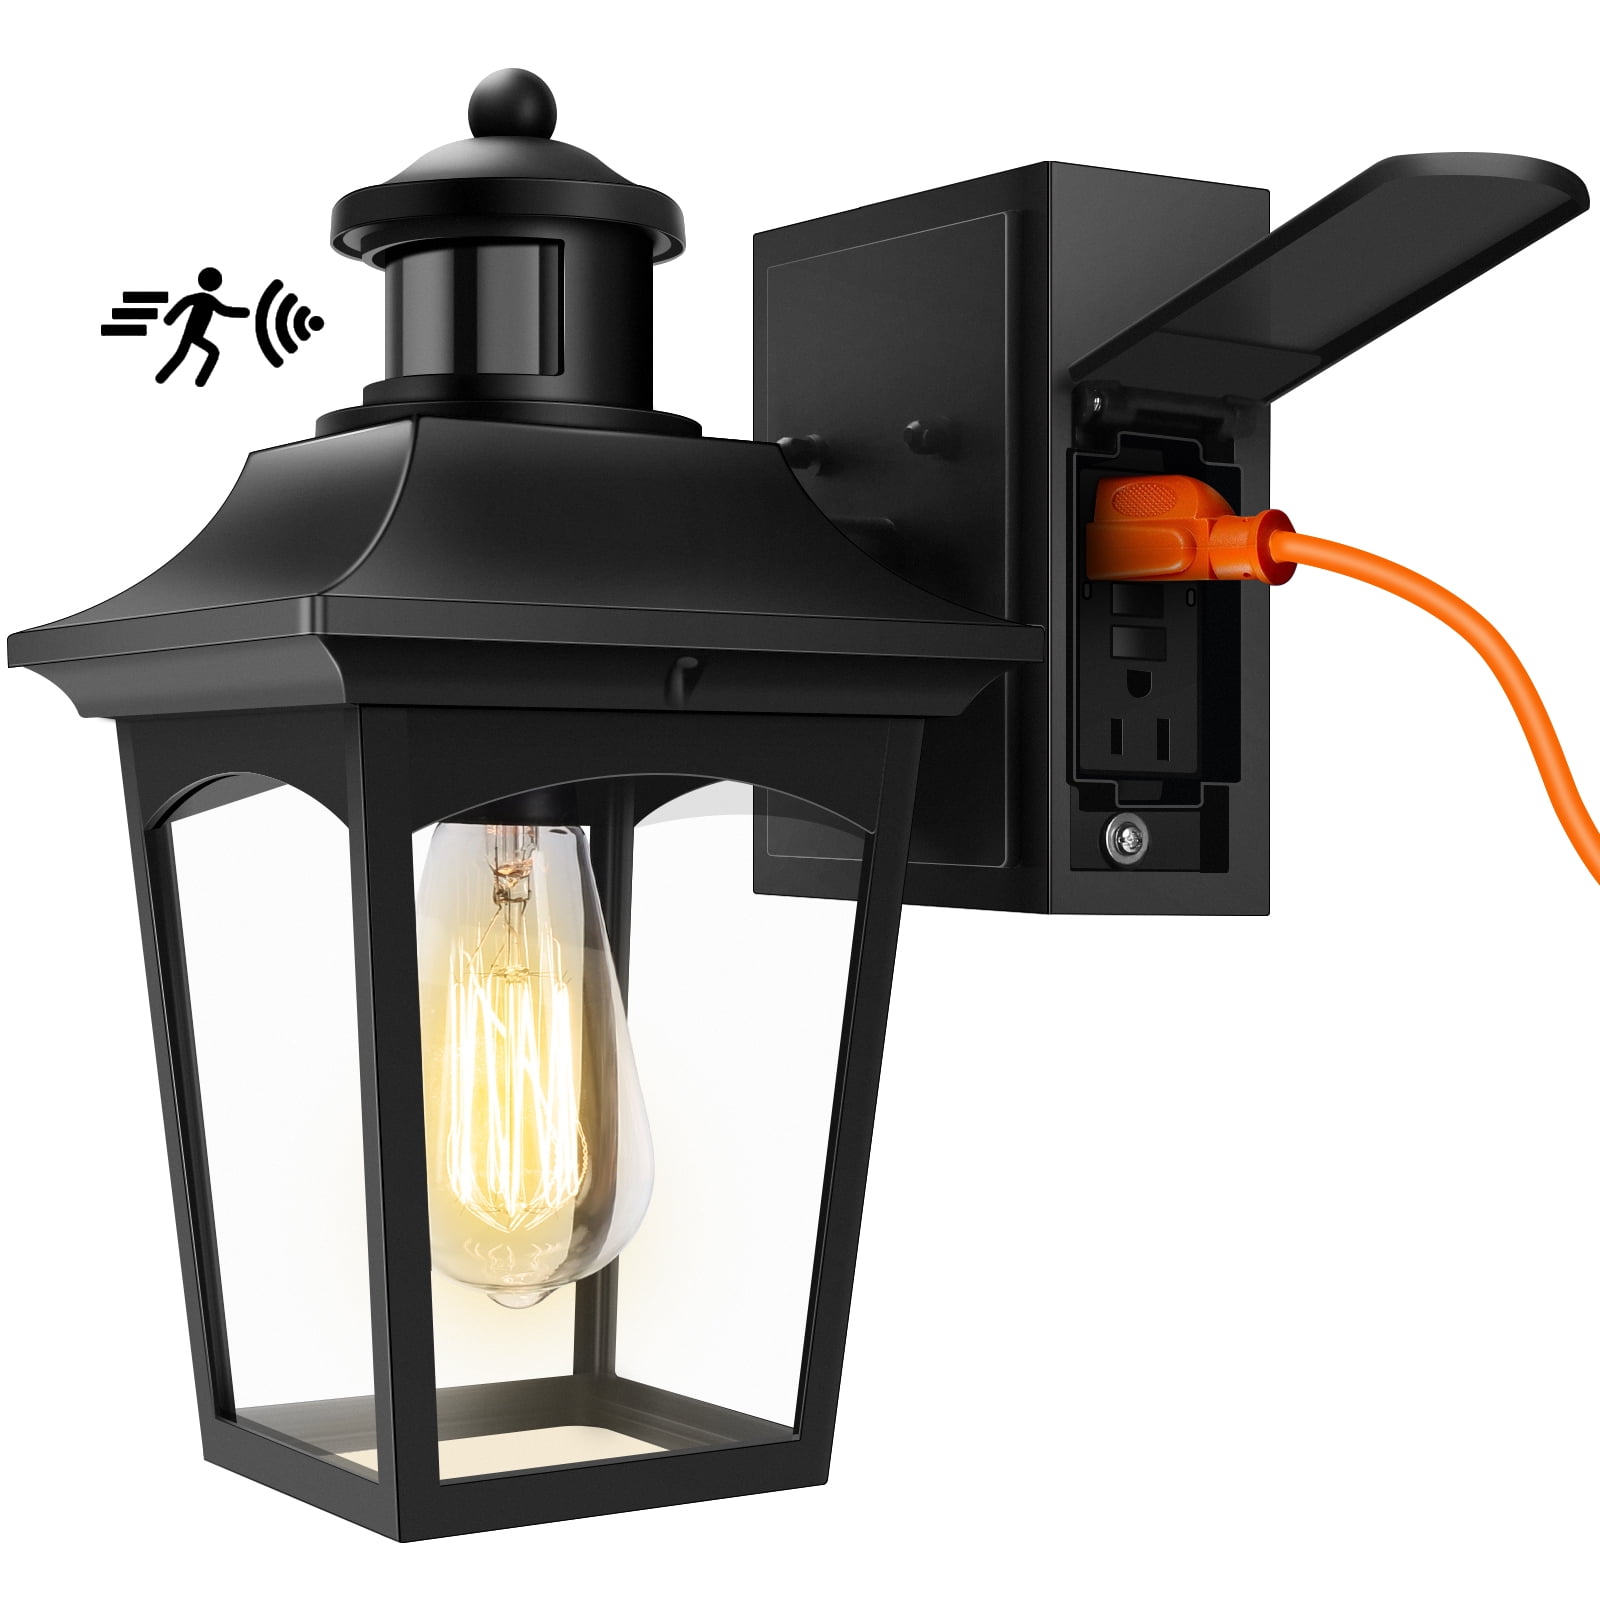 Motion Sensor Porch Light Wall Lamp Fixture Outdoor Exterior Glass Decor Lantern 